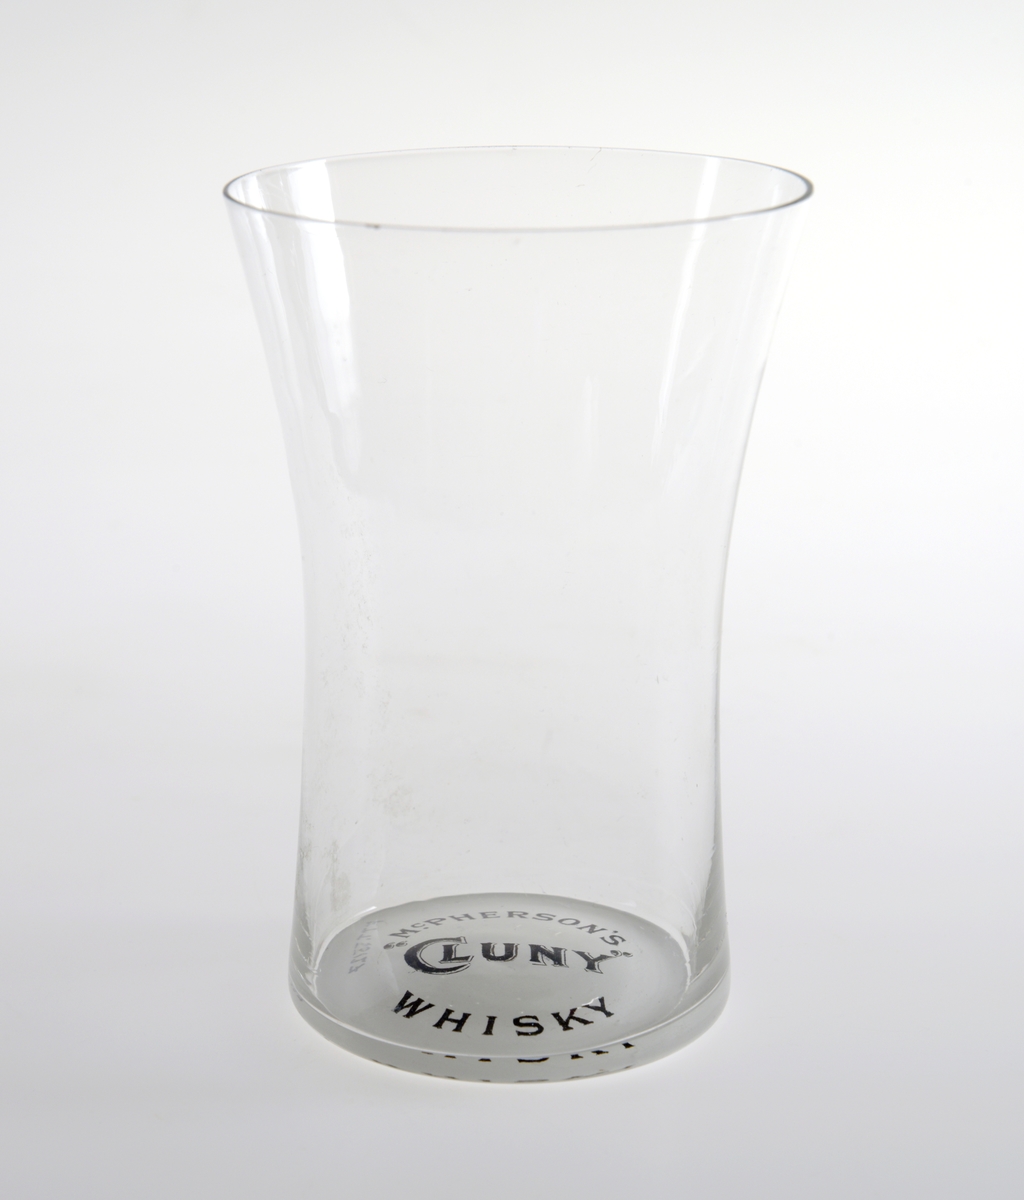 Whiskyglass som er sylinderformet i nederste del av korpus og koniskformet i øverste del.